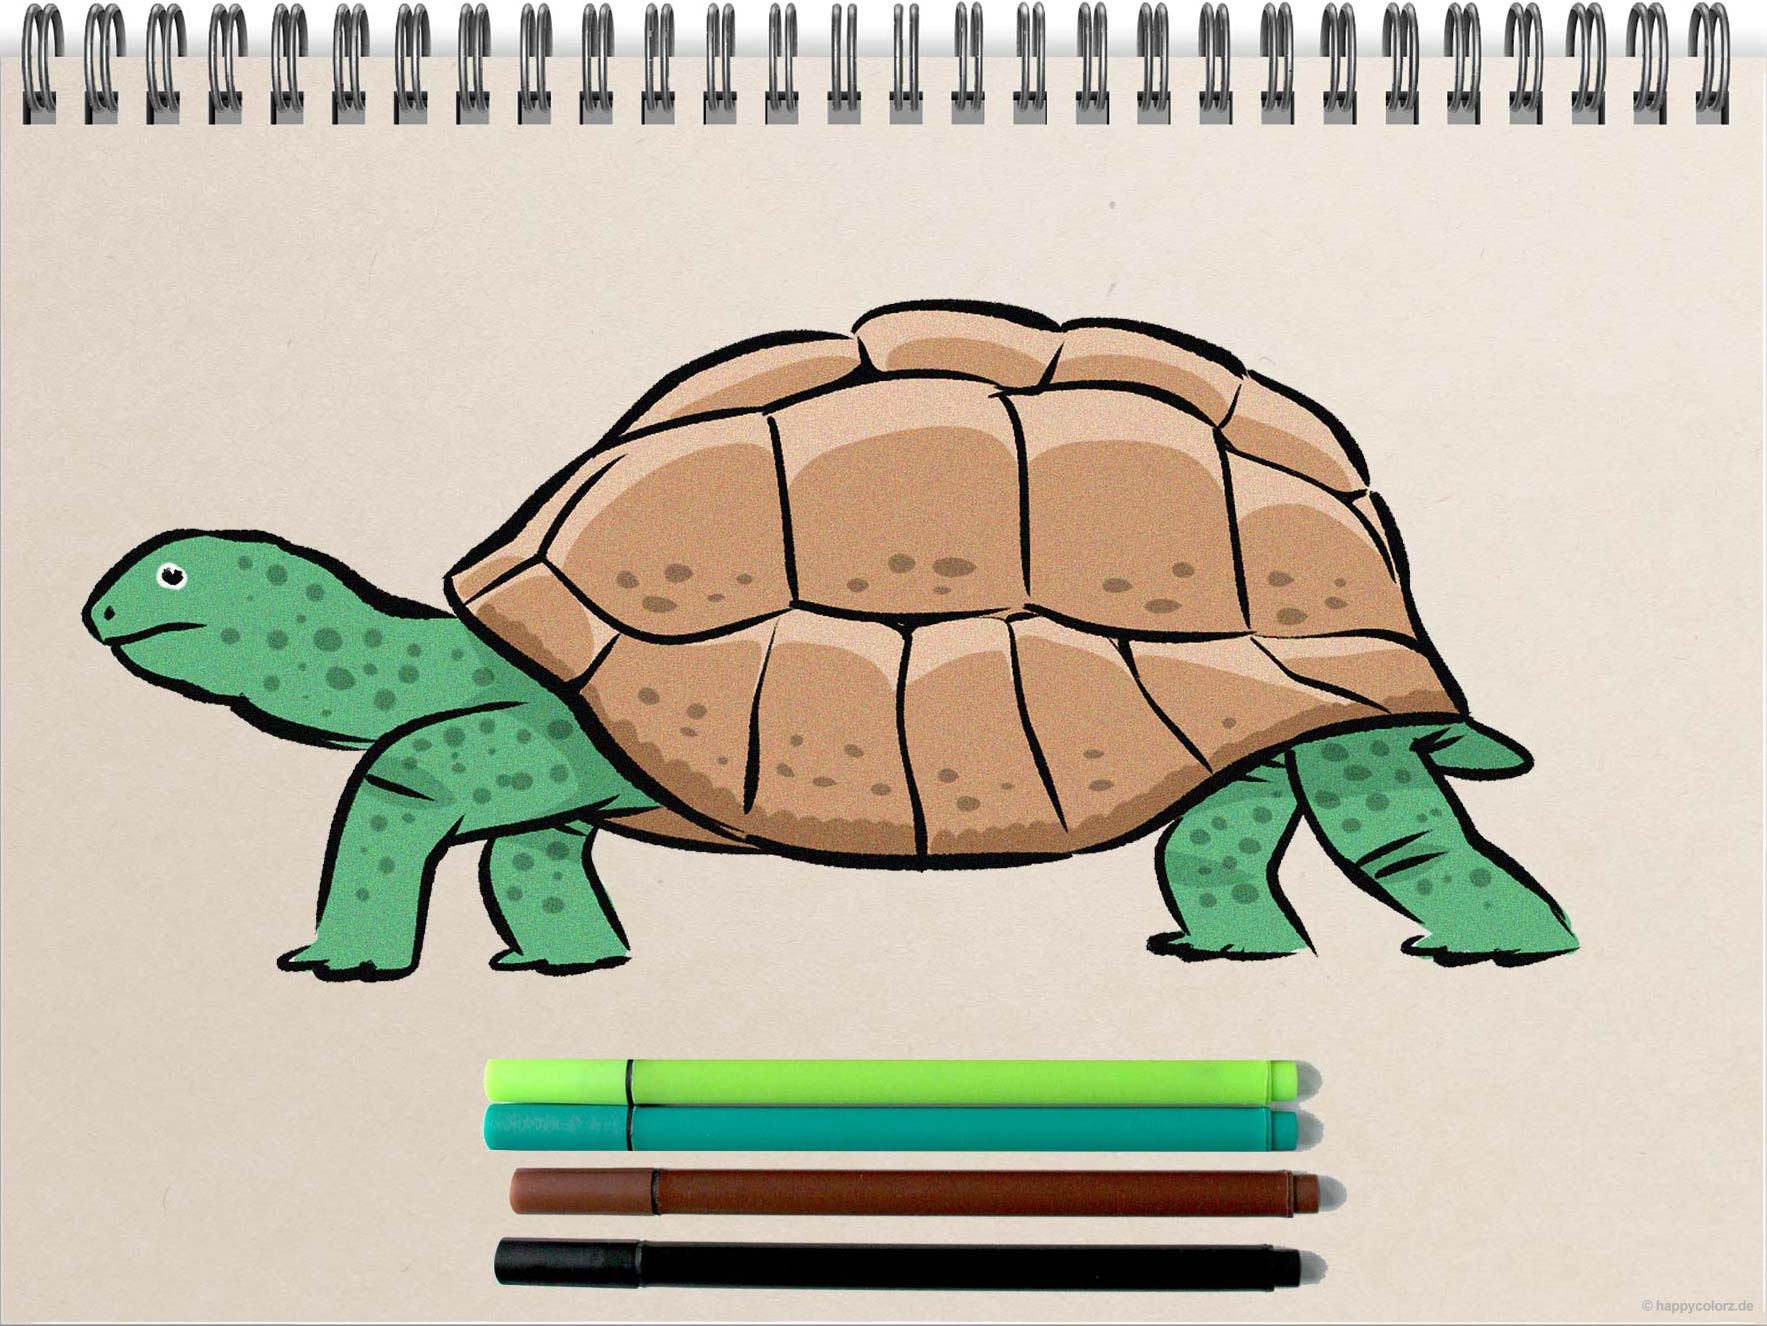 Schildkröte malen - Schritt-für-Schritt Anleitung mit Vorlagen